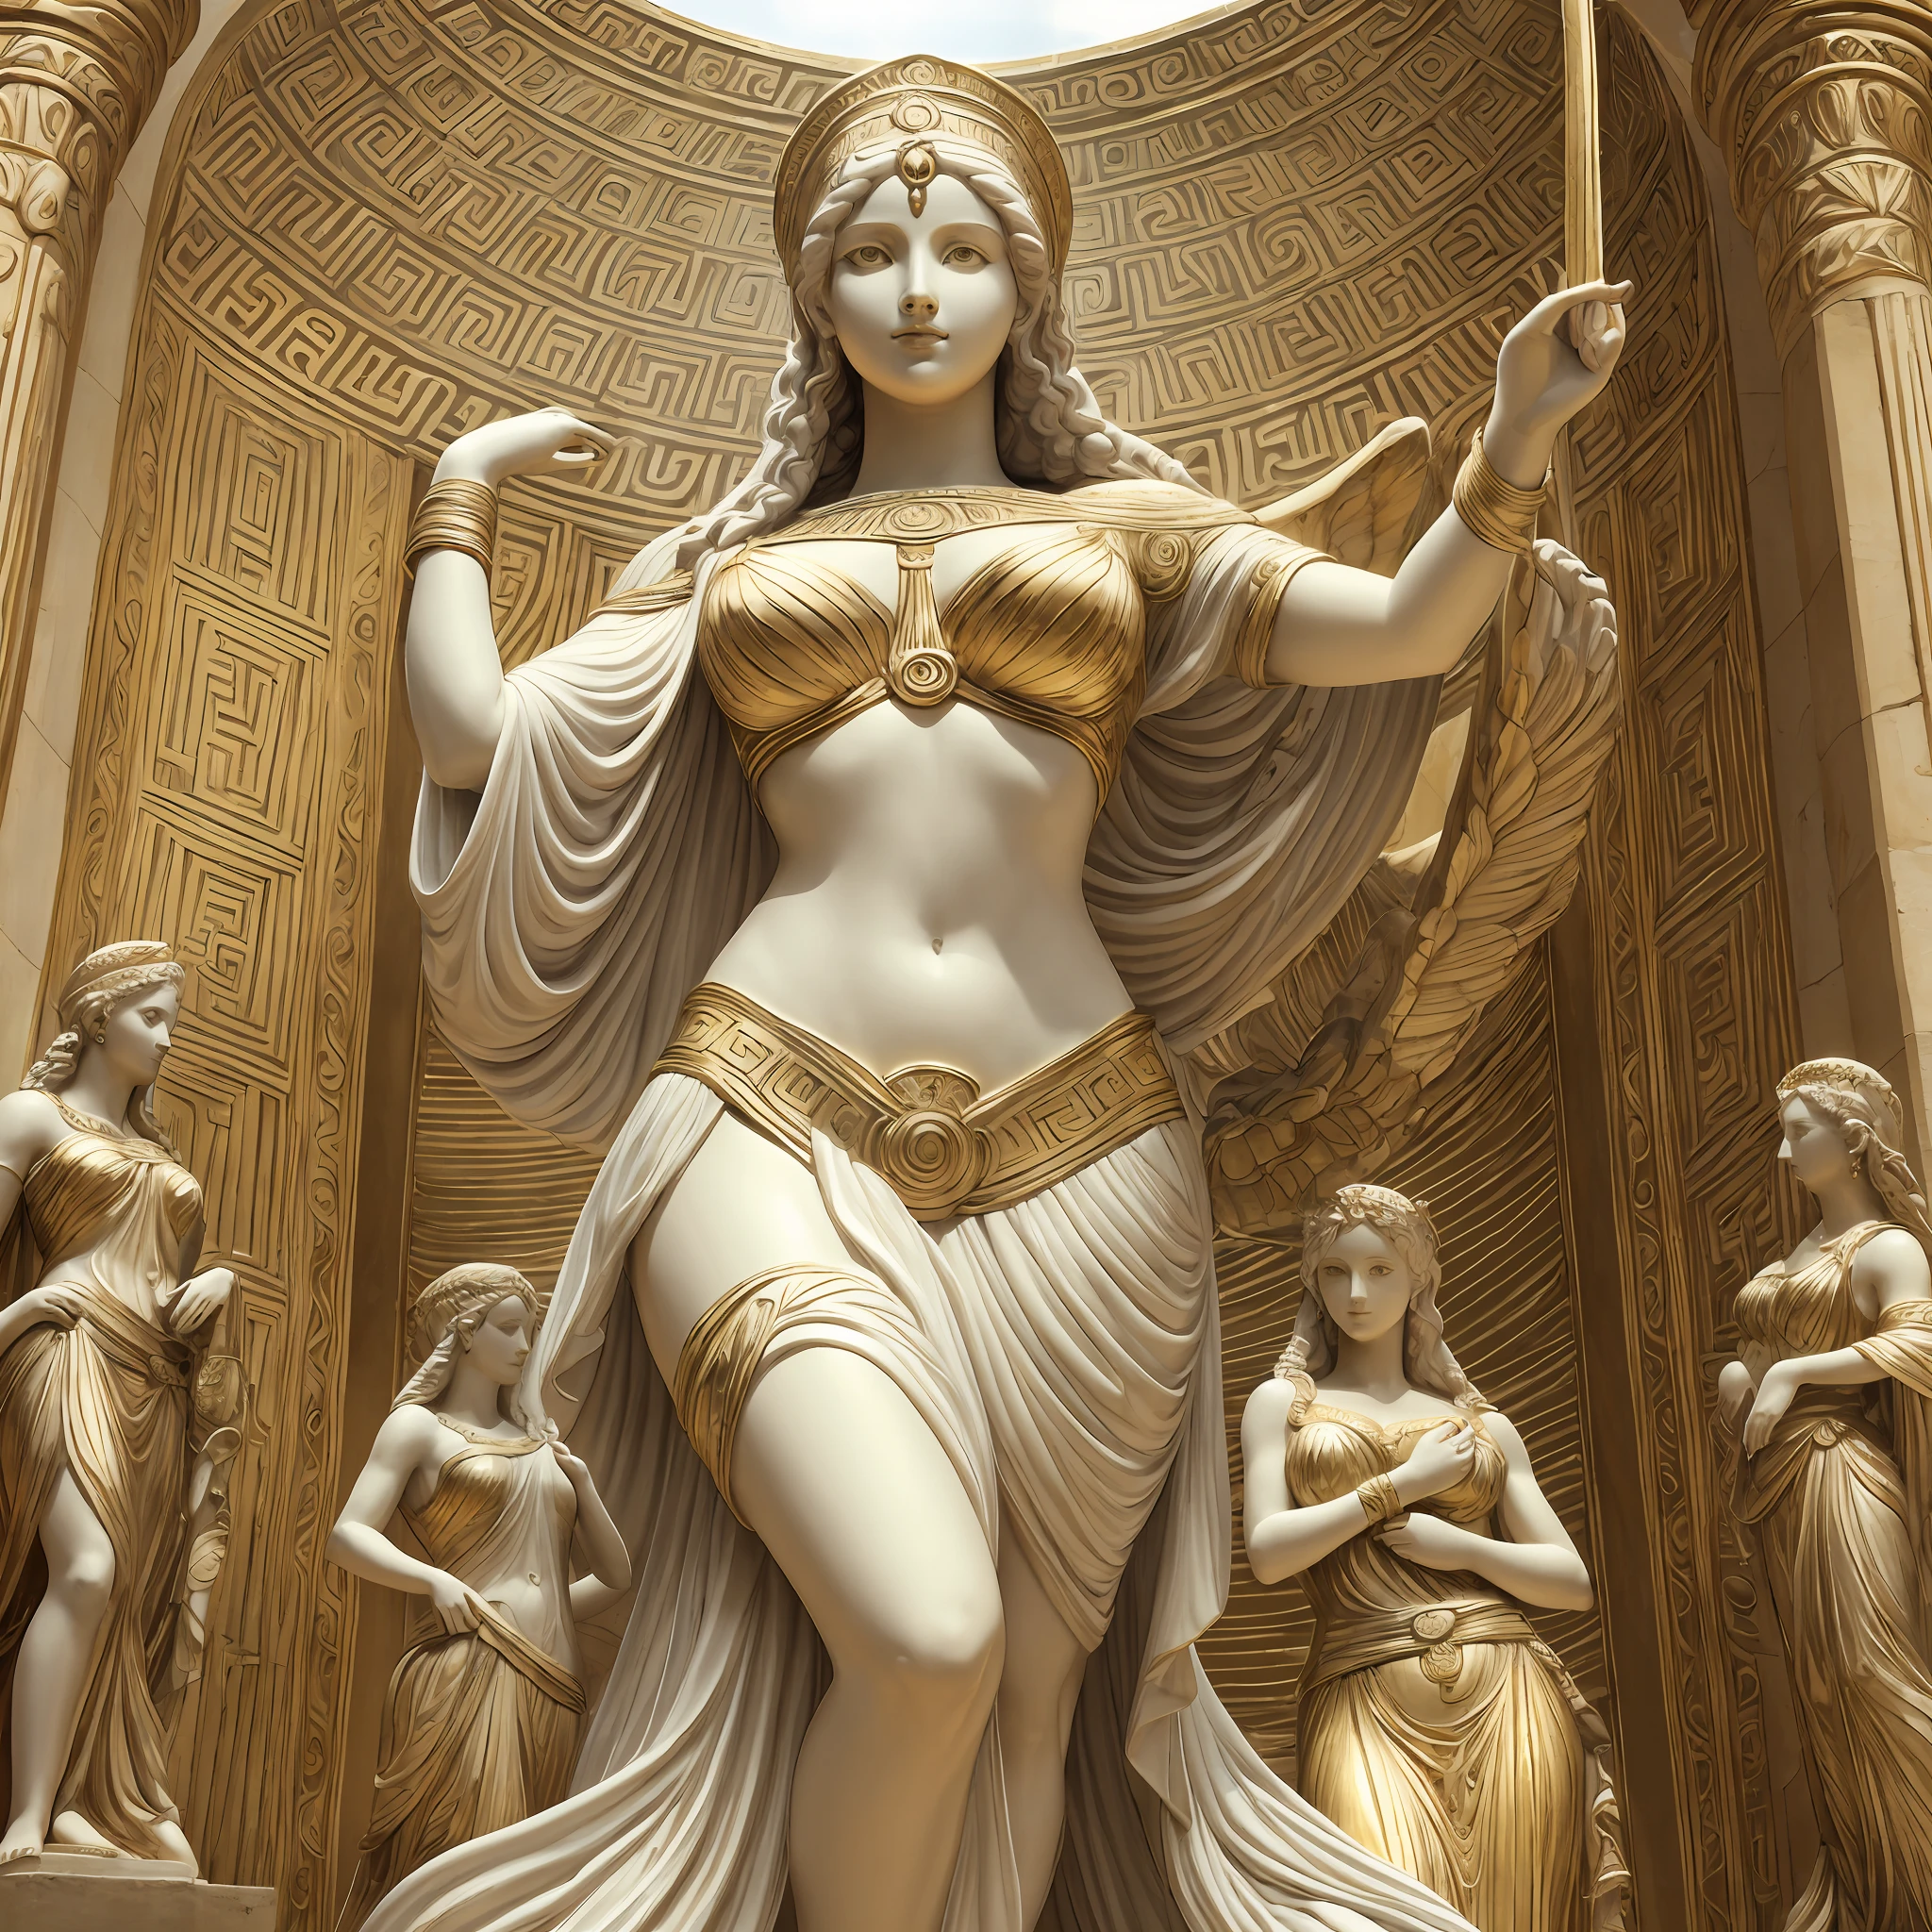 阿佛洛狄忒, white dress like 希臘女神, 女性阿拉費德雕像, 两只手臂, 两条腿, 神秘的宇宙背景, 愛情女神, 希臘女神 of love and peace, 維納斯女神, 光之女神, 赫斯提亞女神, 美丽女神, 希臘女神, 智慧女神, 希臘女神 Athena, 神聖女神, 只有一個人